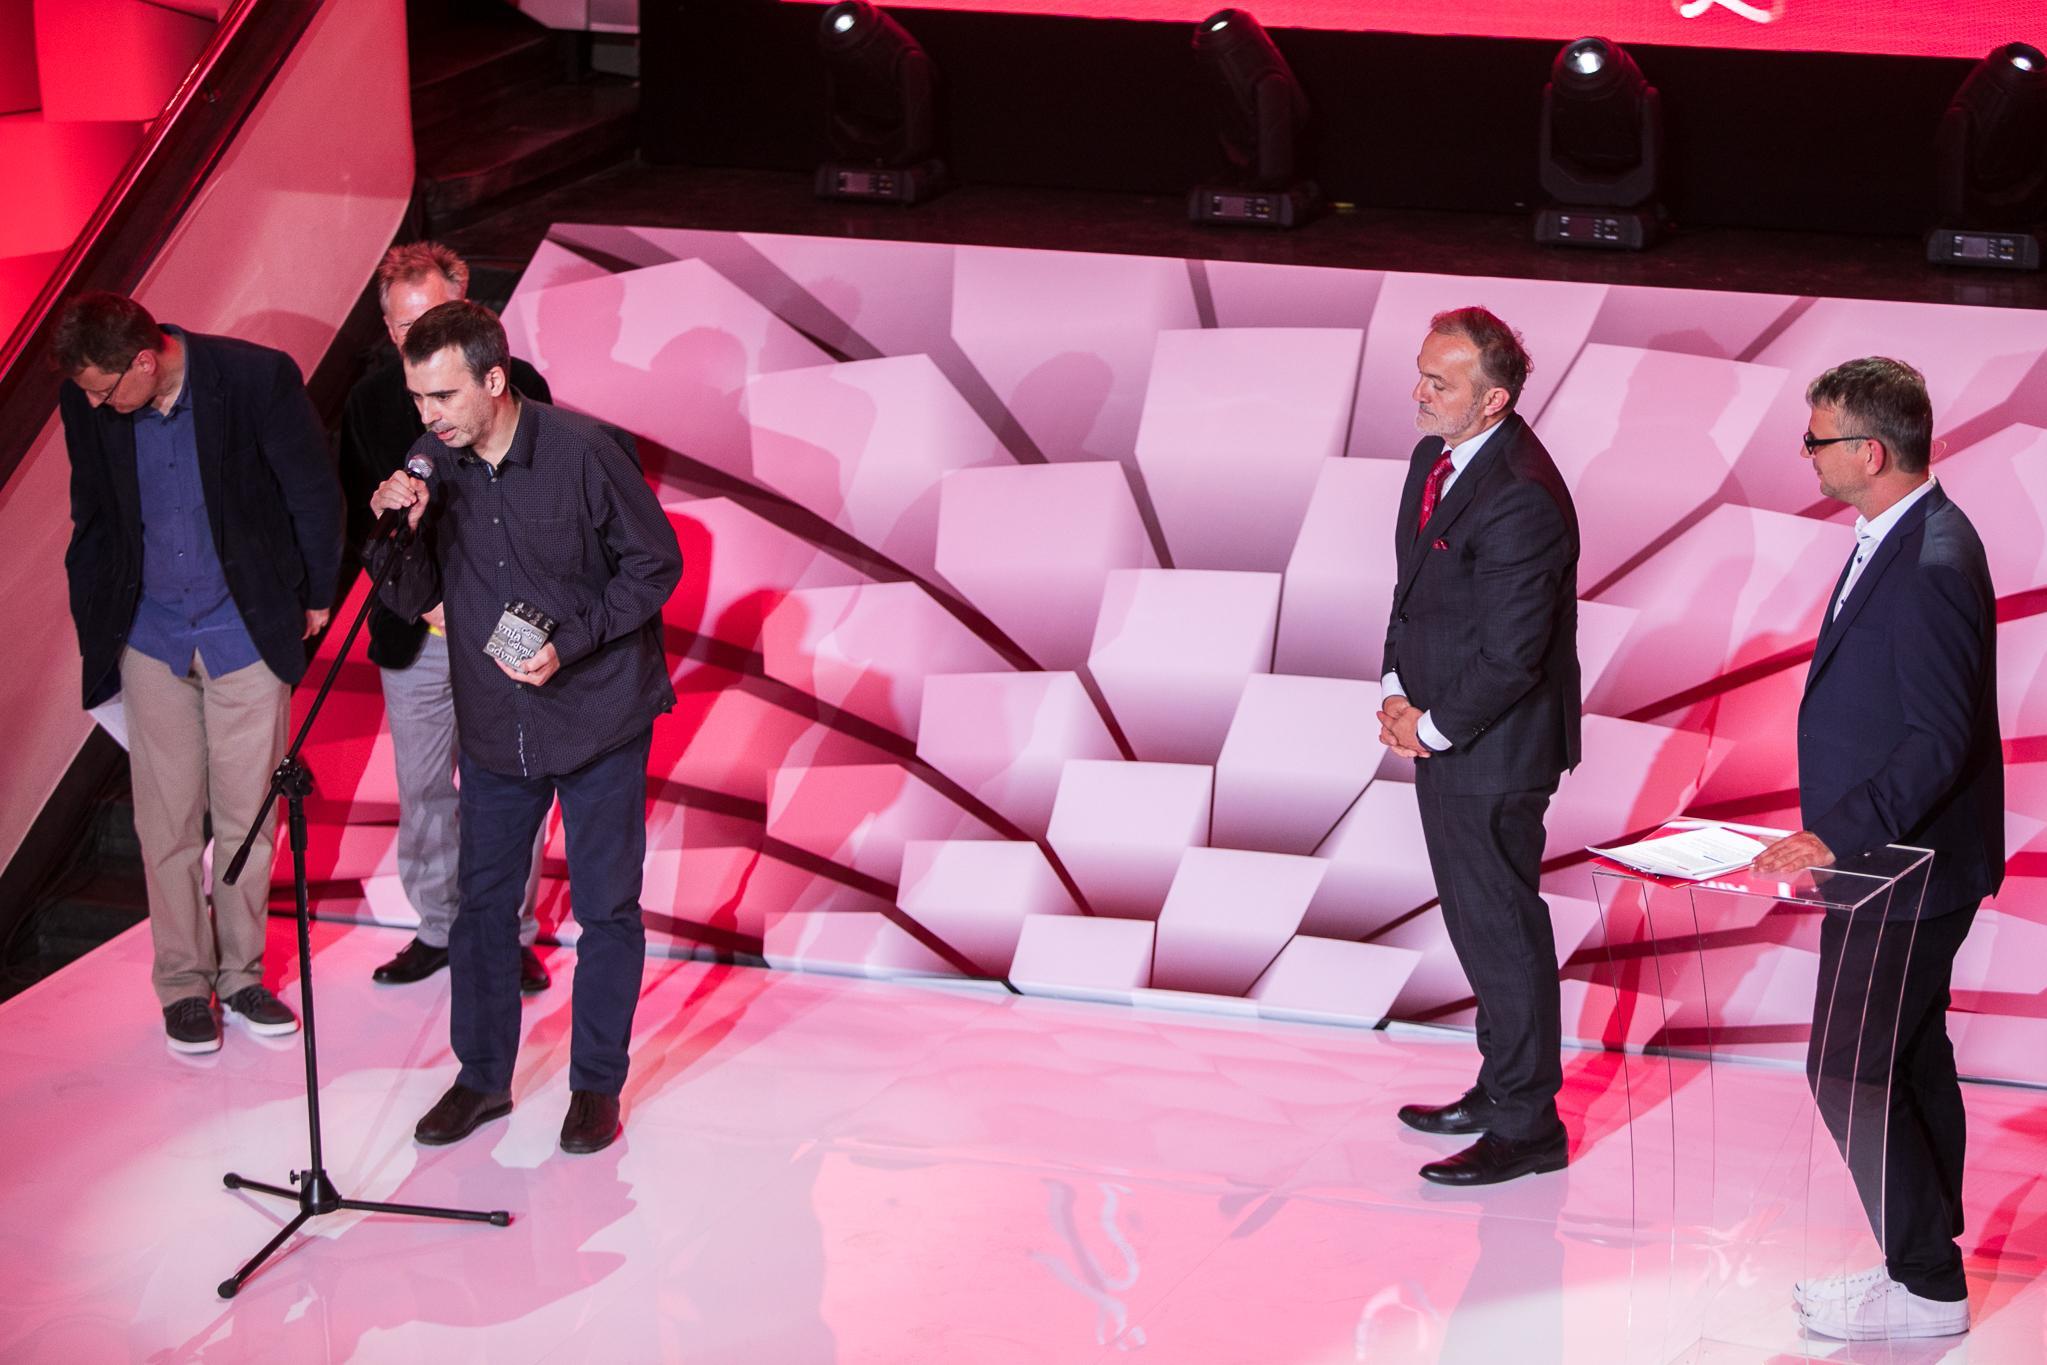 Dominik Bielicki przemawiający na scenie po odebraniu nagrody. (fot. Karol Stańczak)